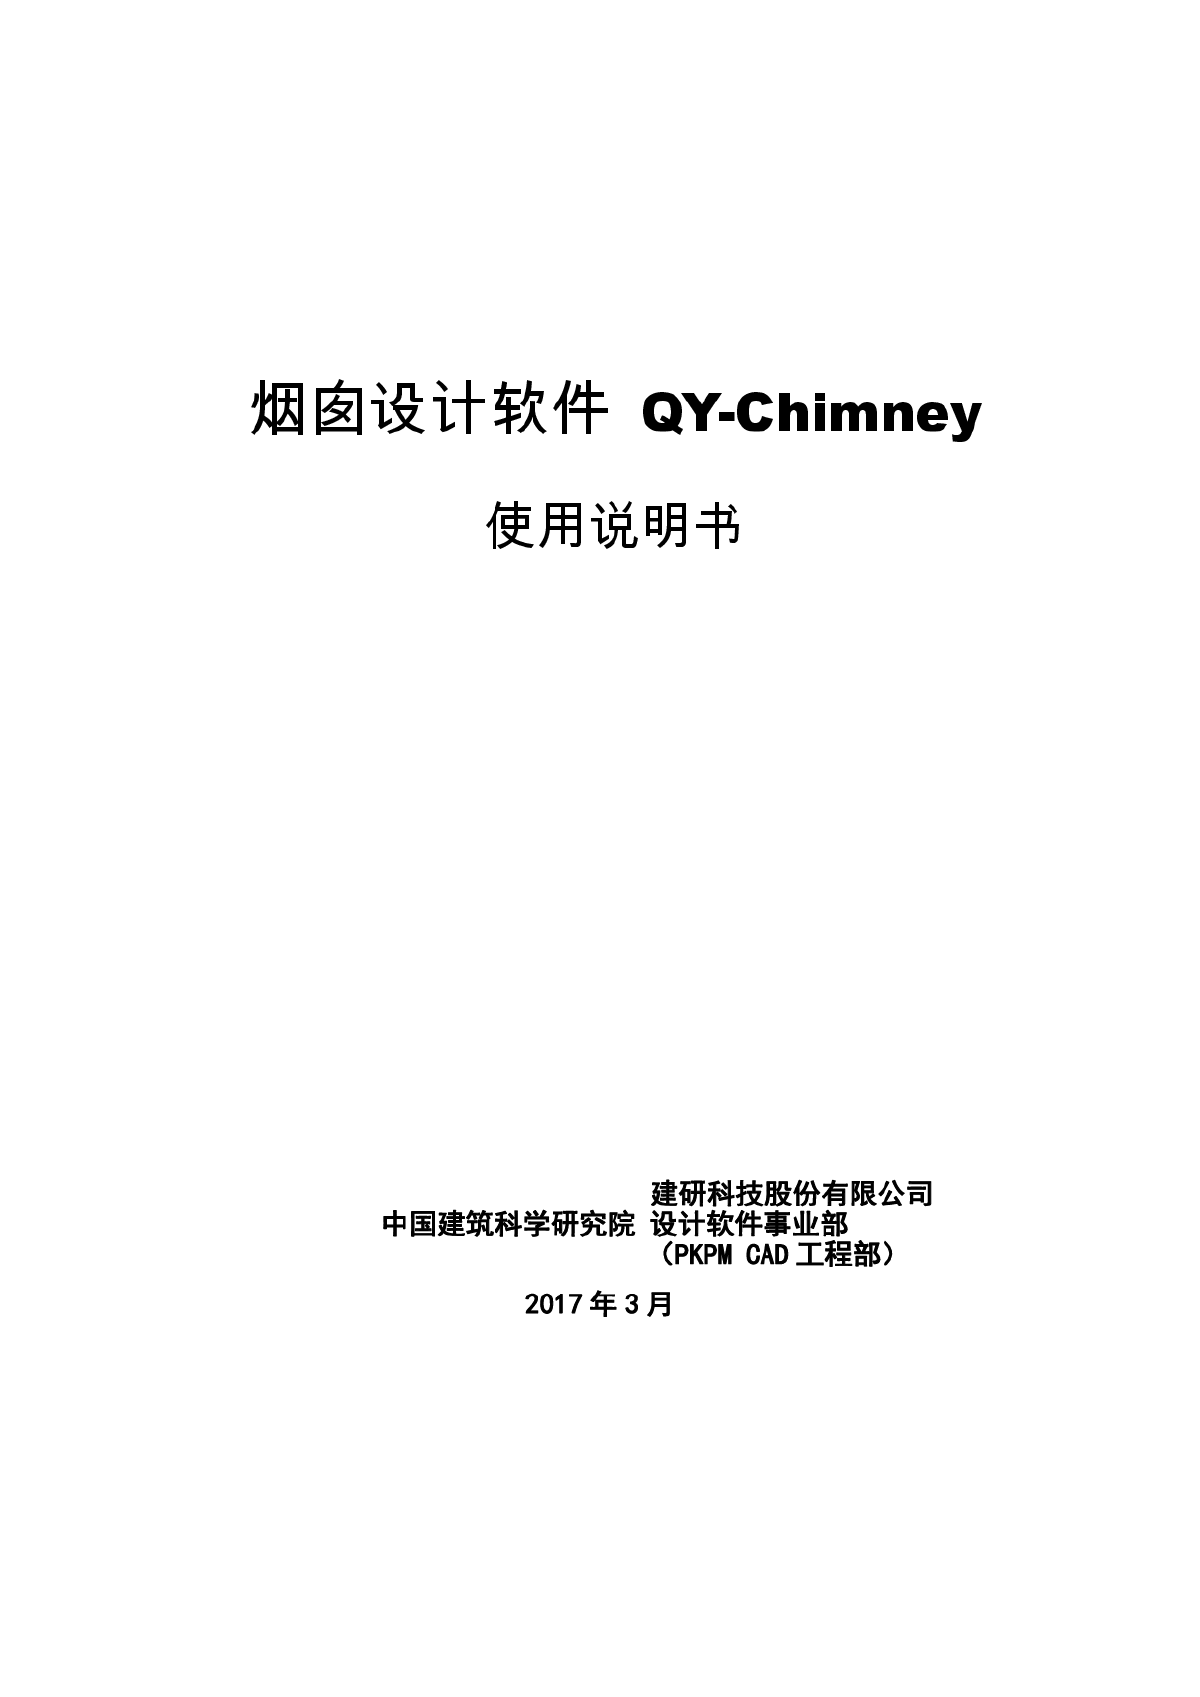 PKPM V4.1说明书-QY-Chimney-图一